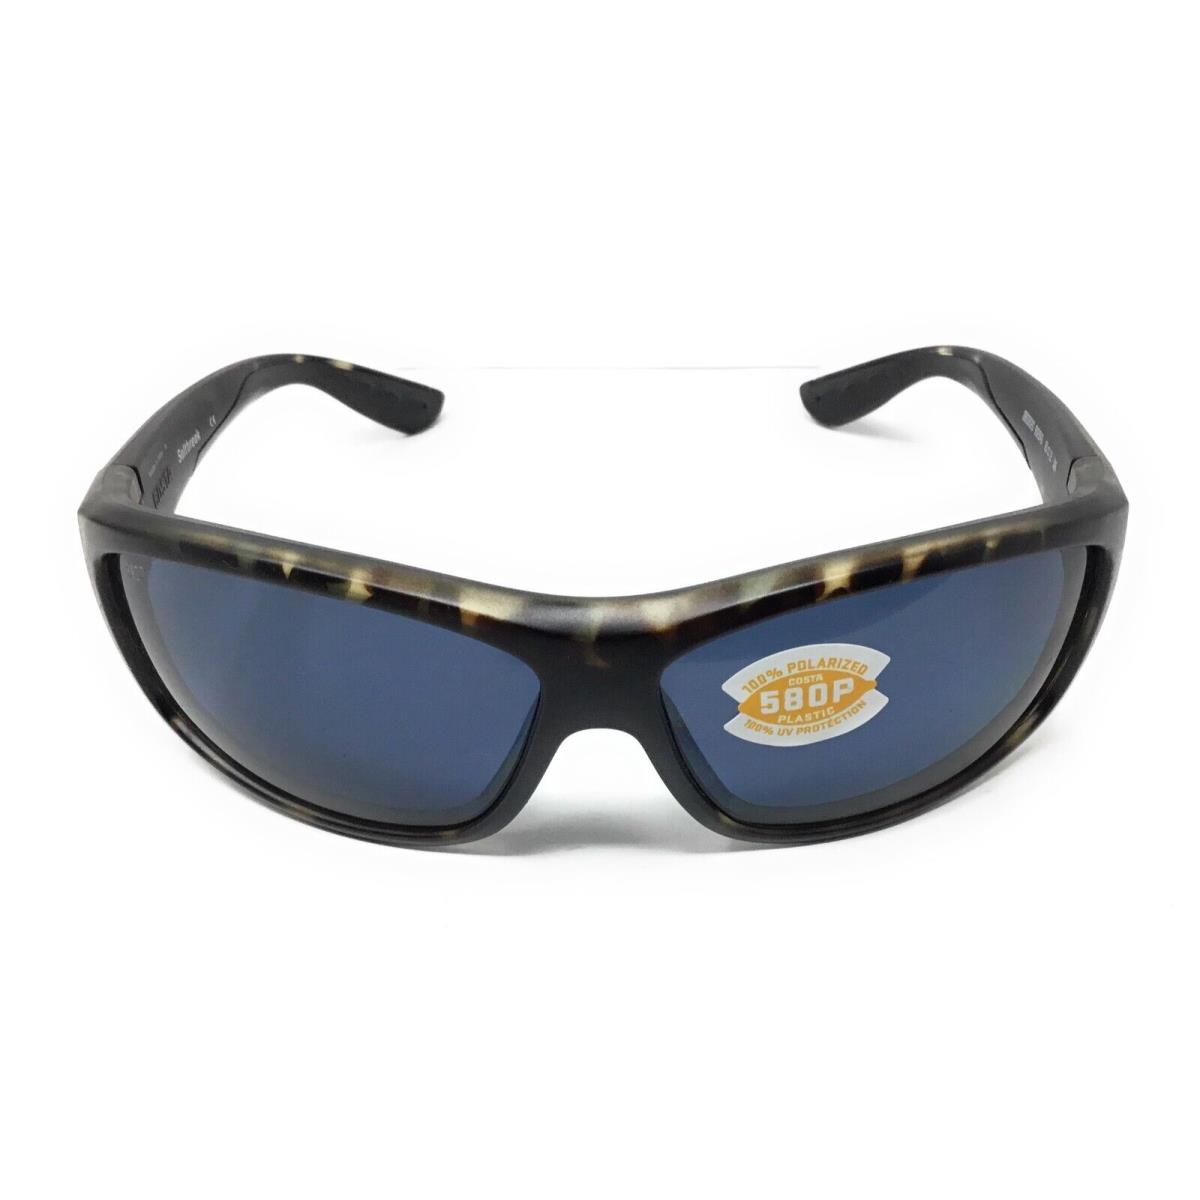 Costa Del Mar Saltbreak Mens Gray Polarized Lens Sunglasses 6S9020 902045 65-12 - Wetlands Frame, Gray Lens